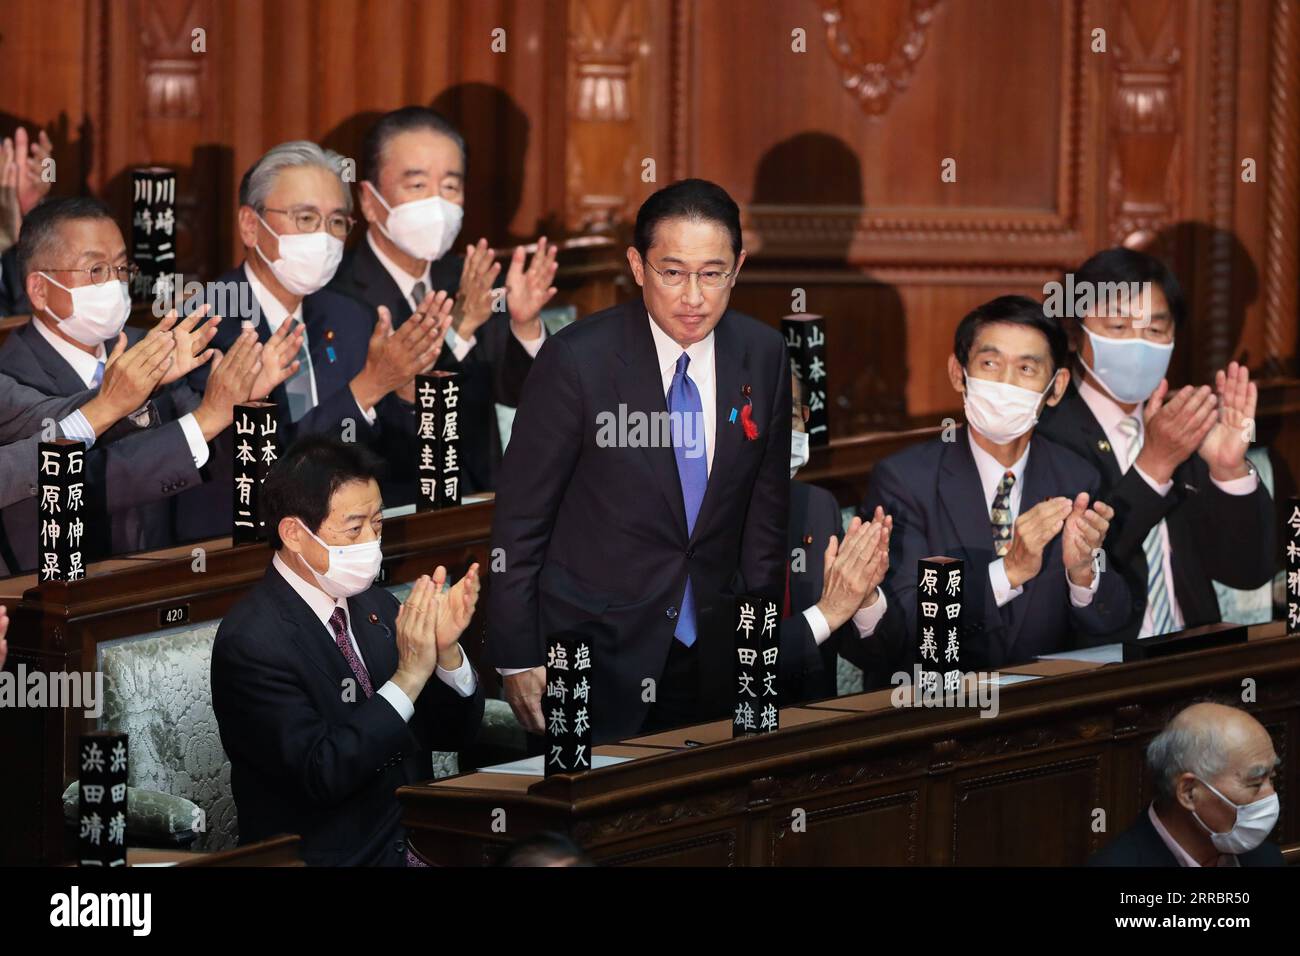 211004 -- TOKIO, 4. Oktober 2021 -- Fumio Kishida, Führer der japanischen Liberaldemokratischen Partei LDP, steht während einer speziellen Diät-Sitzung in Tokio, Japan, am 4. Oktober 2021. Fumio Kishida wurde am Montag als Nachfolger von Yoshihide Suga zum neuen Premierminister des Landes gewählt. JAPAN-TOKIO-FUMIO KISHIDA-NEUER MINISTERPRÄSIDENT DUXXIAOYI PUBLICATIONXNOTXINXCHN Stockfoto